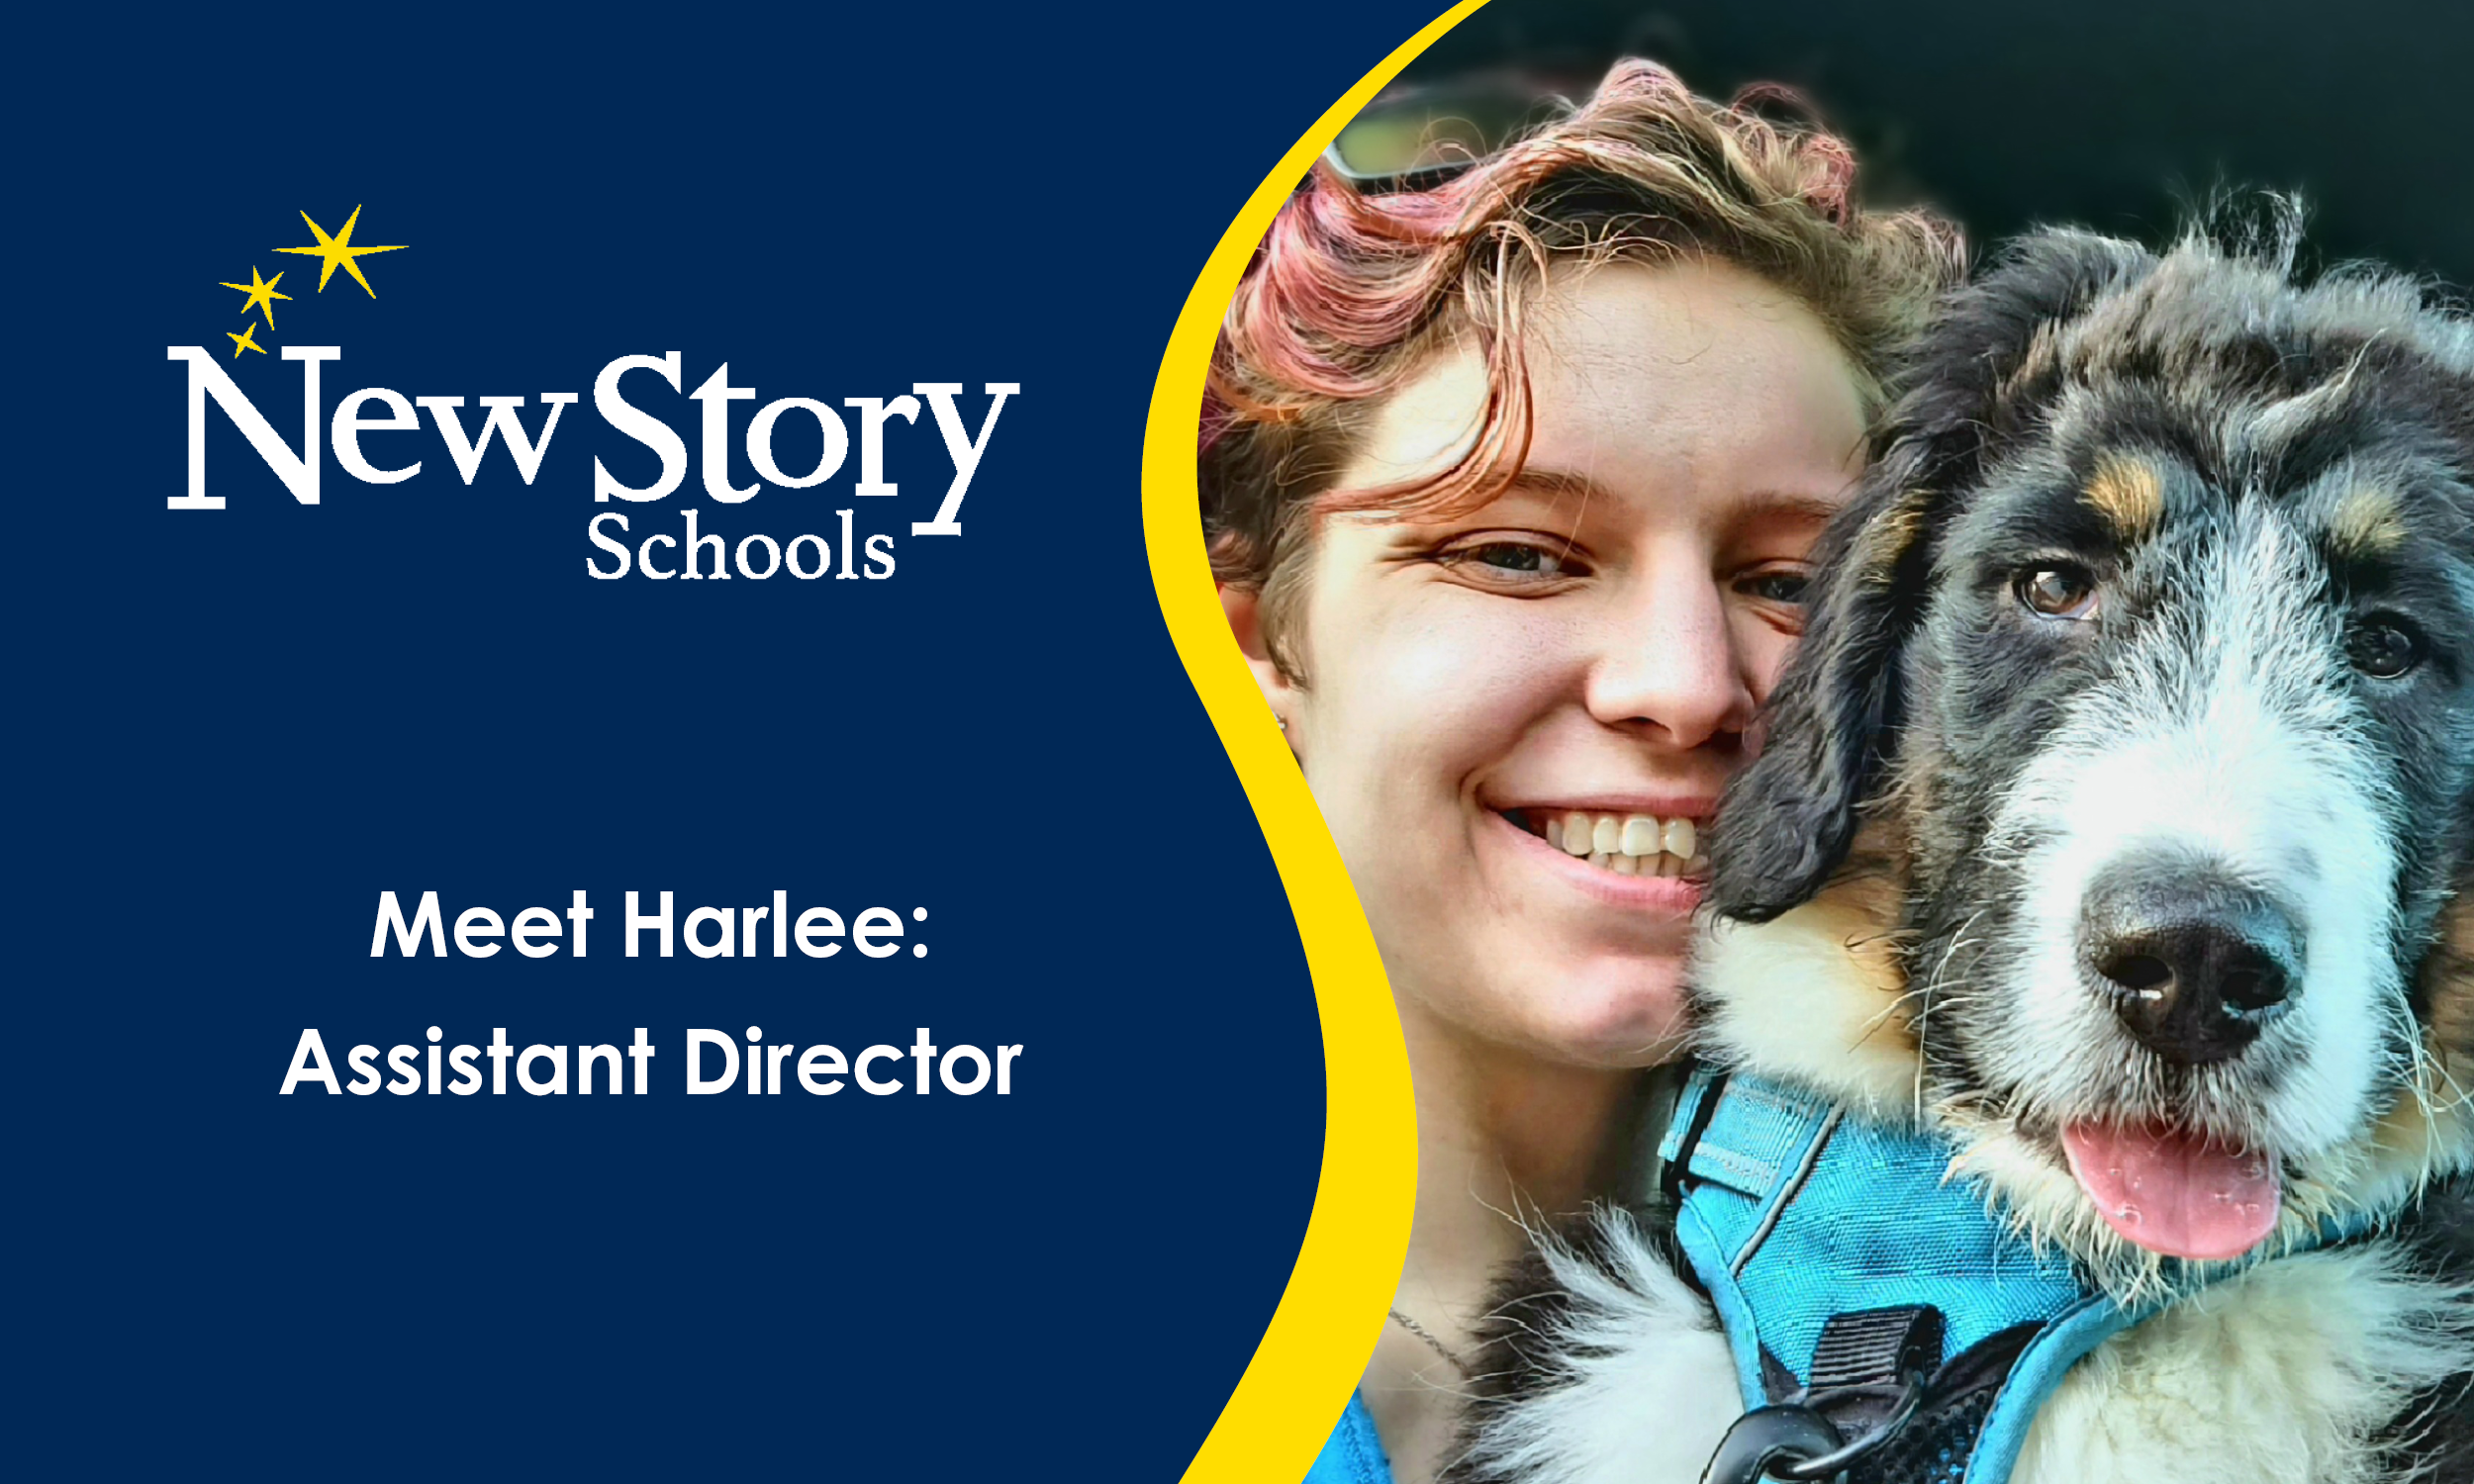 Meet Harlee: Assistant Director